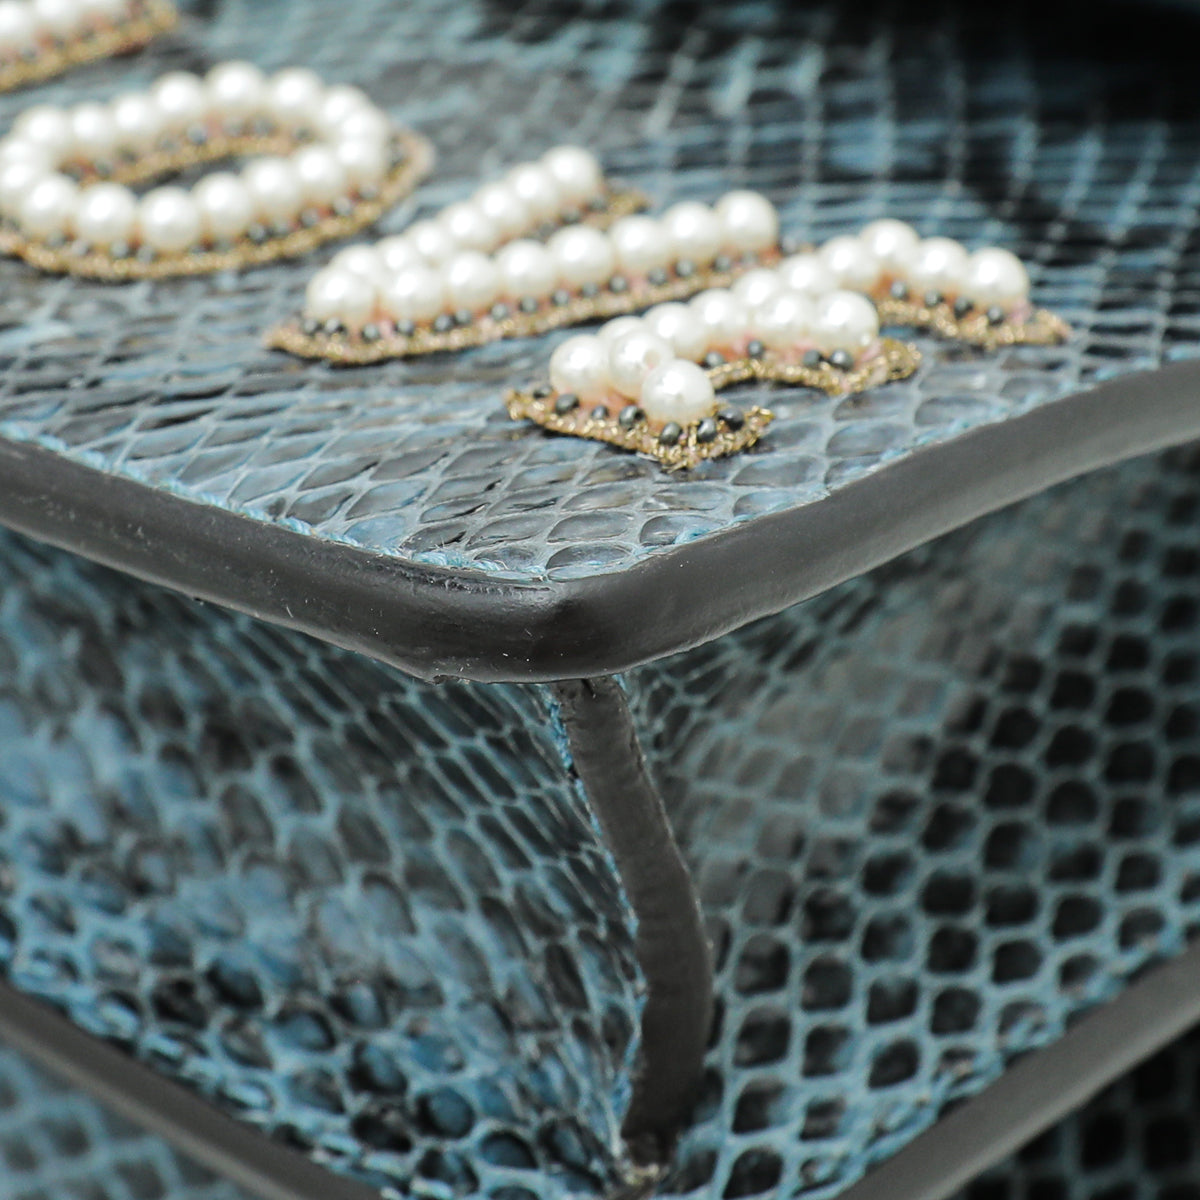 Gucci Marine Blue Python Crystal Embellished "Blind for Love" Dionysus Bag